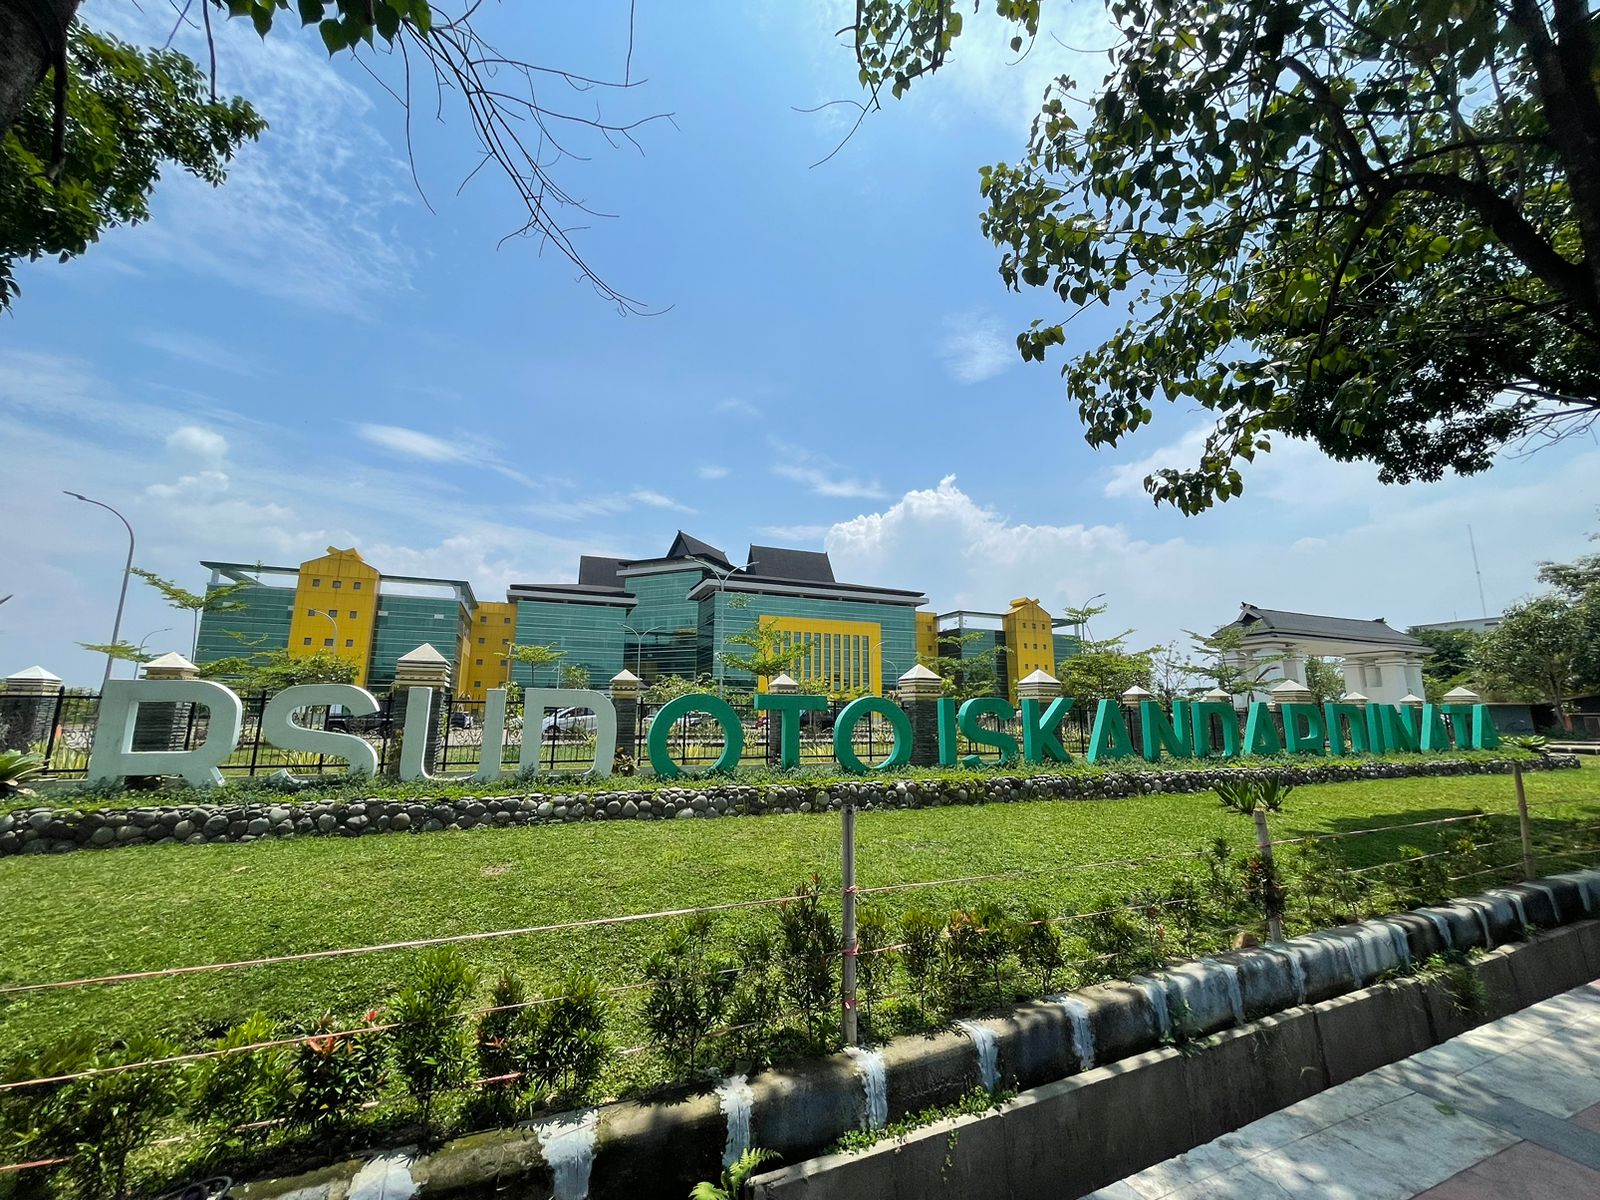 Rumah Sakit Umum Daerah Otto Iskandar Dinata (RSUD Otista) yang berada di Soreang, Kabupaten Bandung.